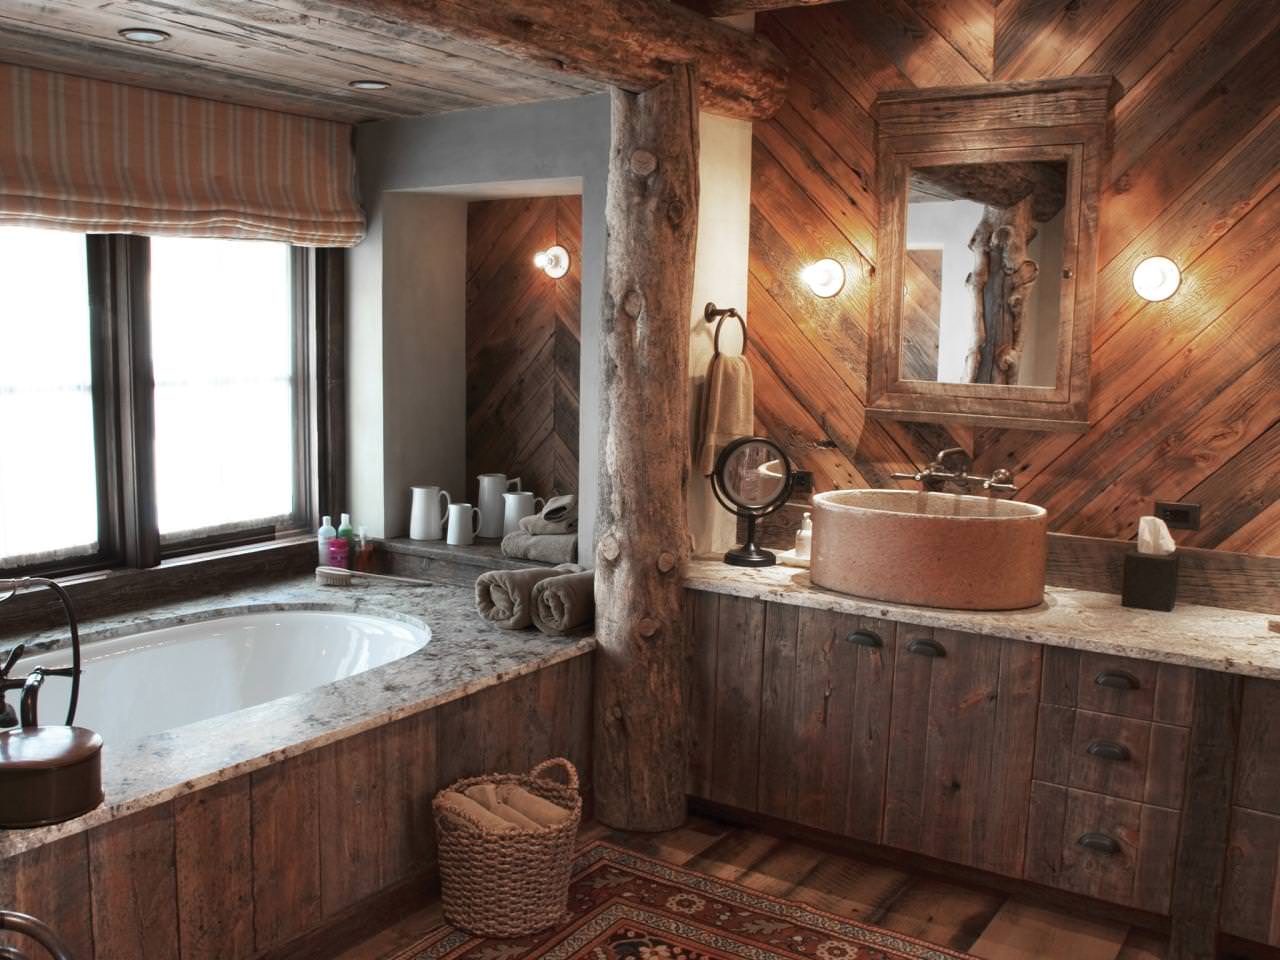 Badeværelse i et træhus: foto af det indre af en smuk finish i et hus fra en bar